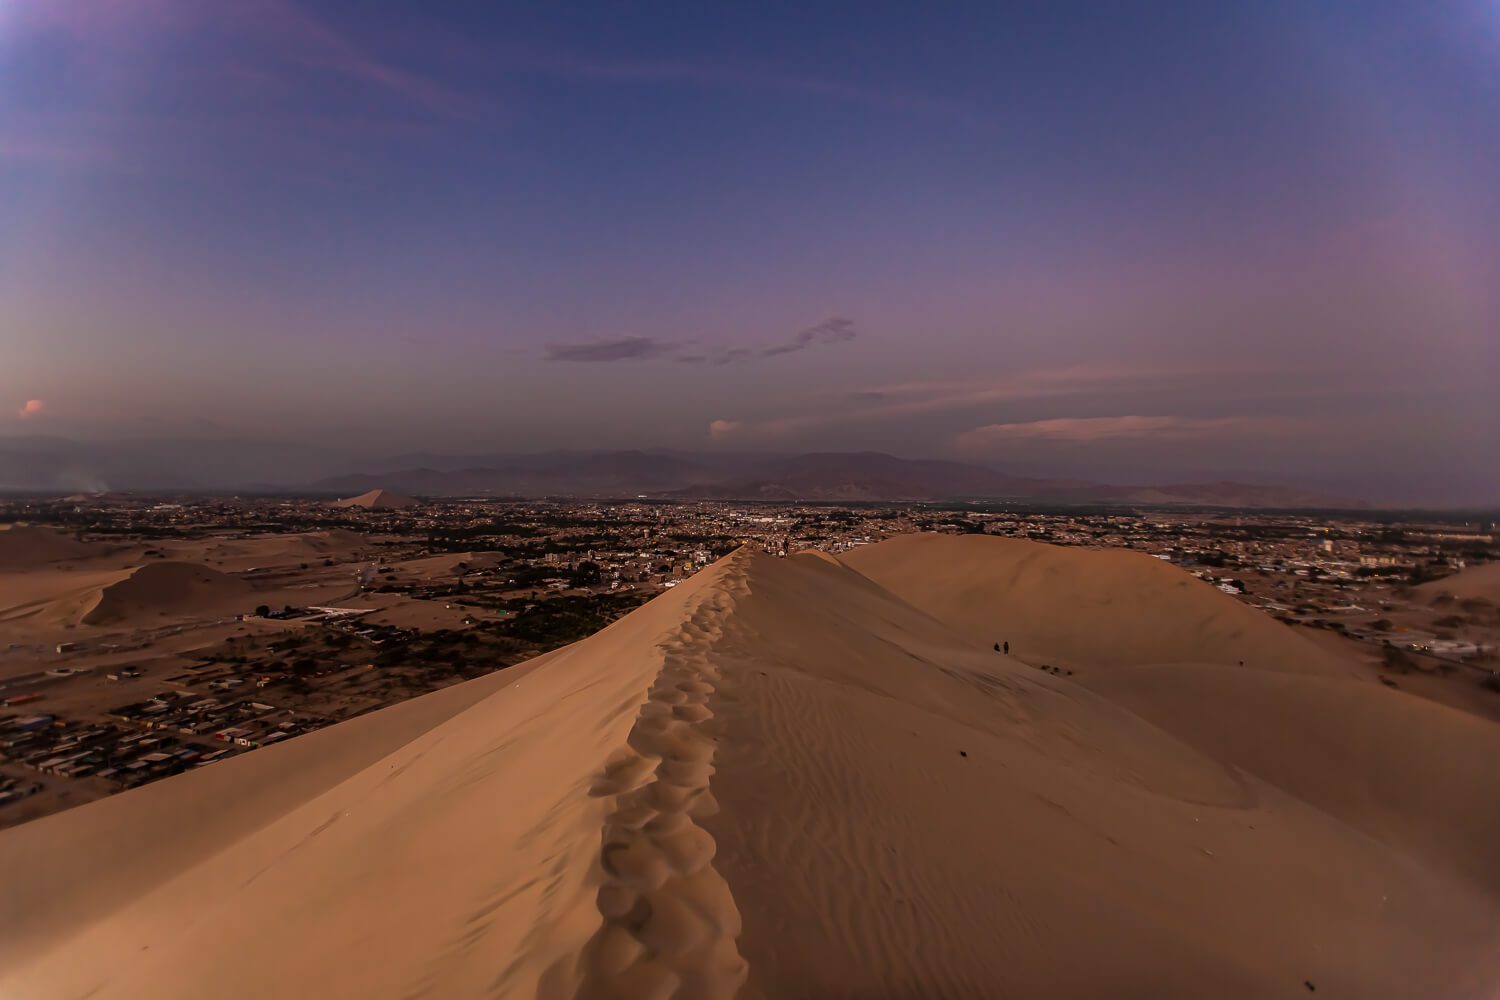 Sunset atop the dunes